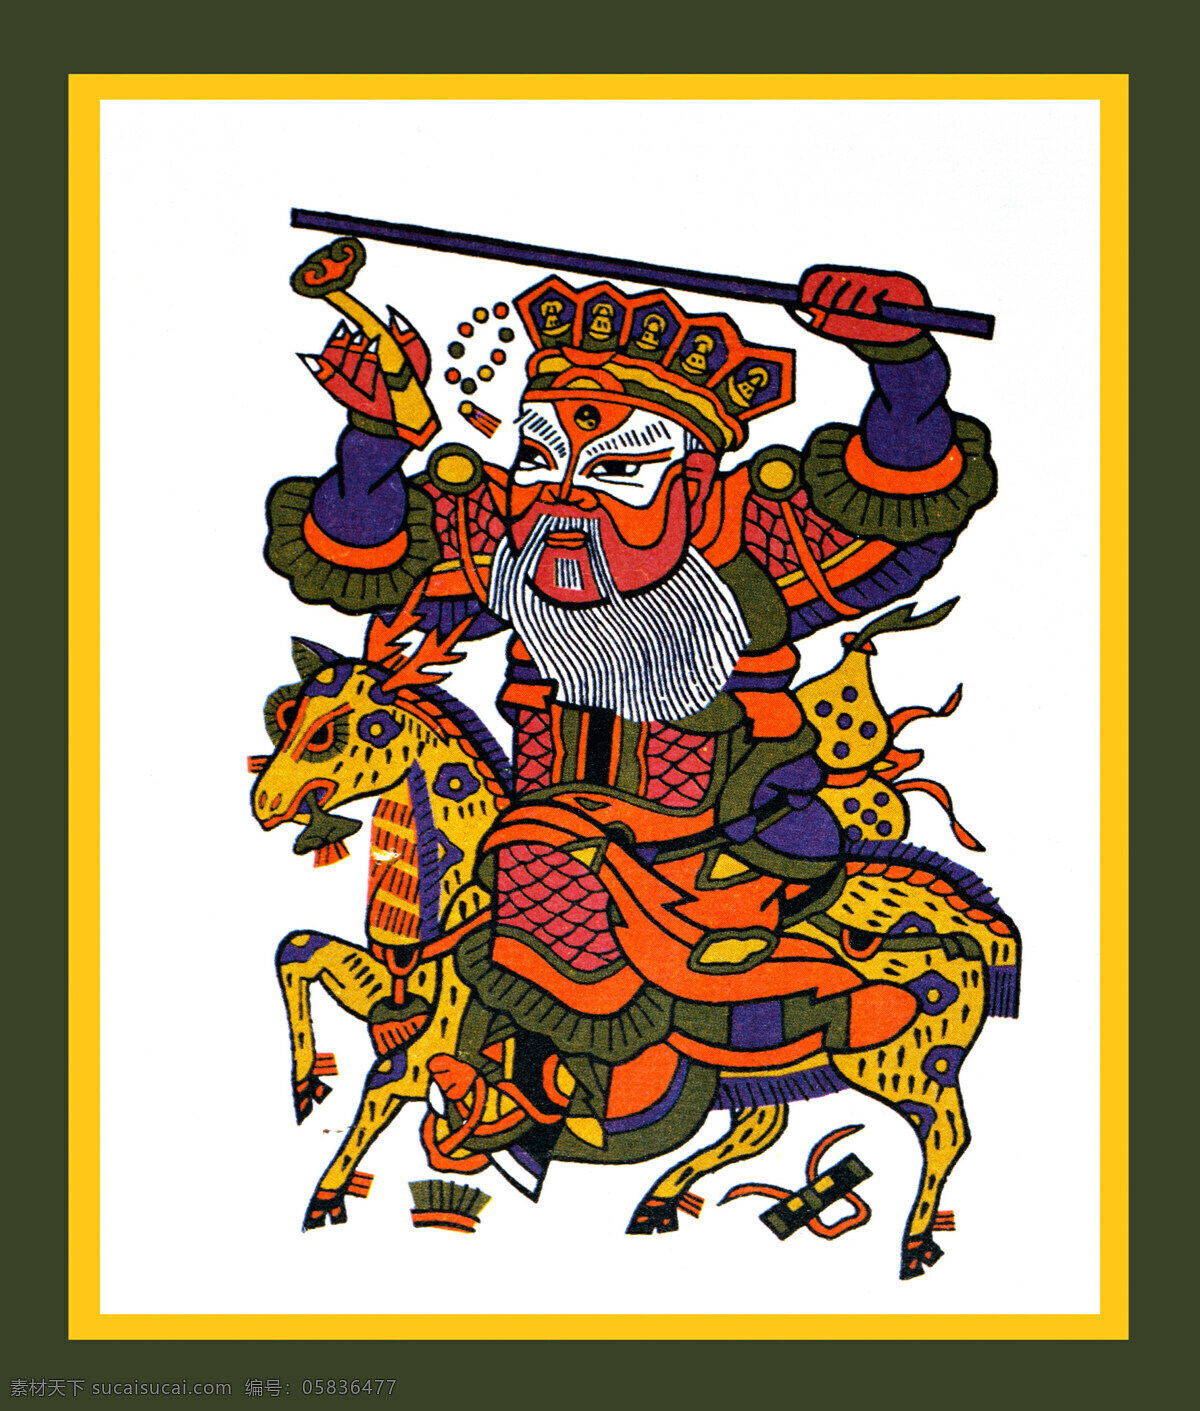 年画免费下载 彩色 传统文化 马年 年画 人物 人物模板下载 人物设计素材 生肖 马 文化艺术 节日素材 2015羊年